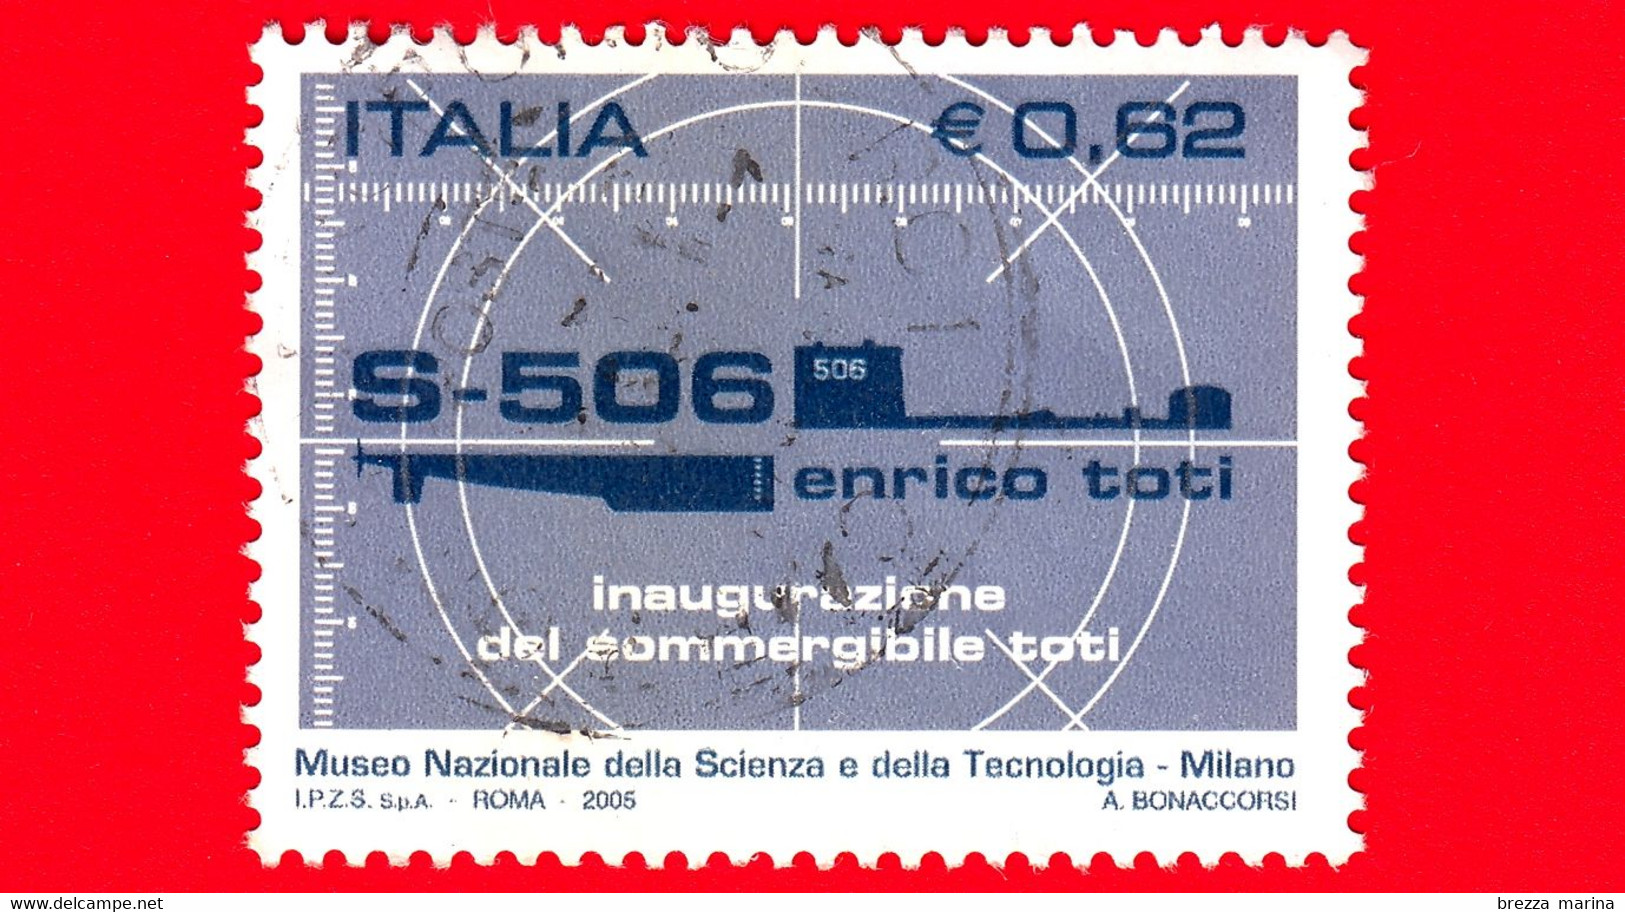 ITALIA - Usato - 2005 - Sommergibile Enrico Toti - Mirino Di Periscopio E Sagoma Del Sottomarino Toti - 0,62 - 2001-10: Usados